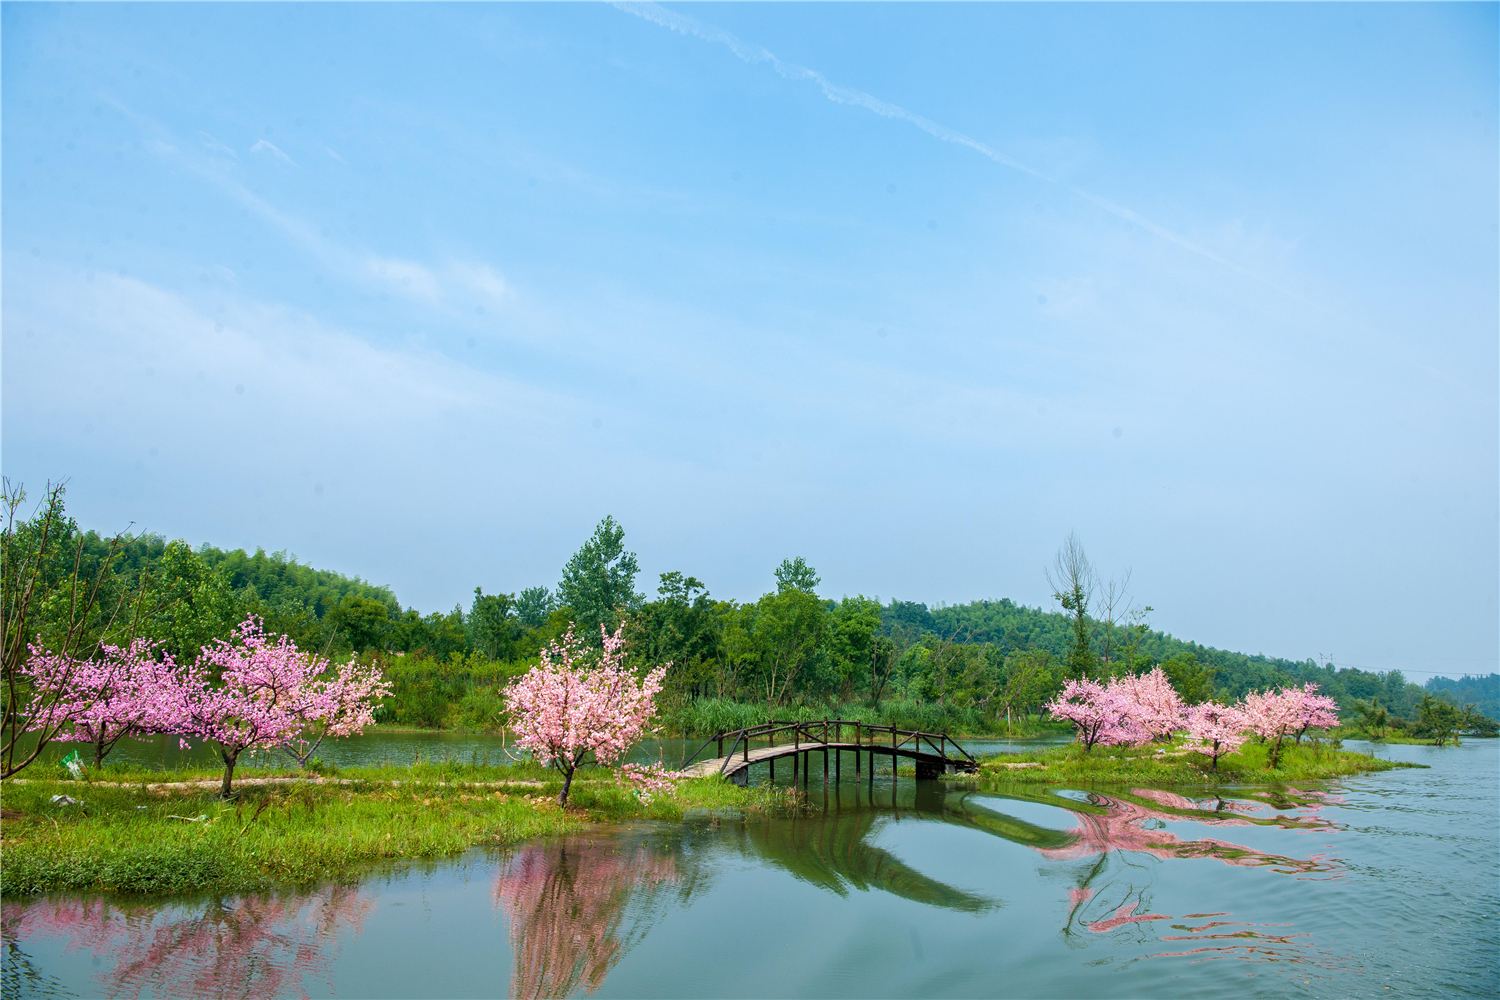 光东村水稻观光园是2017年扩建，今年稻田的景观画是“不忘初心